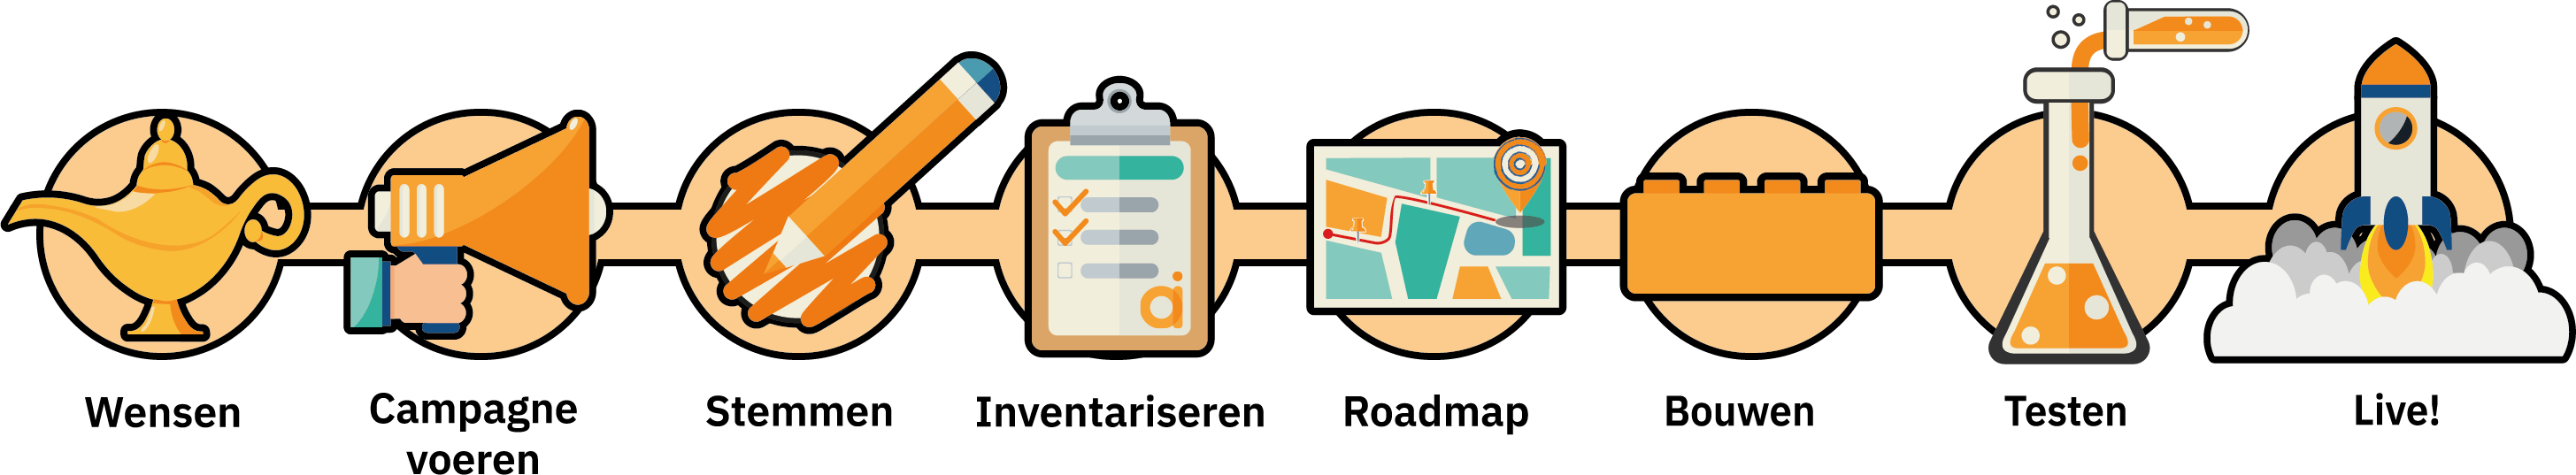 traject wensen - stemmen - Roadmap